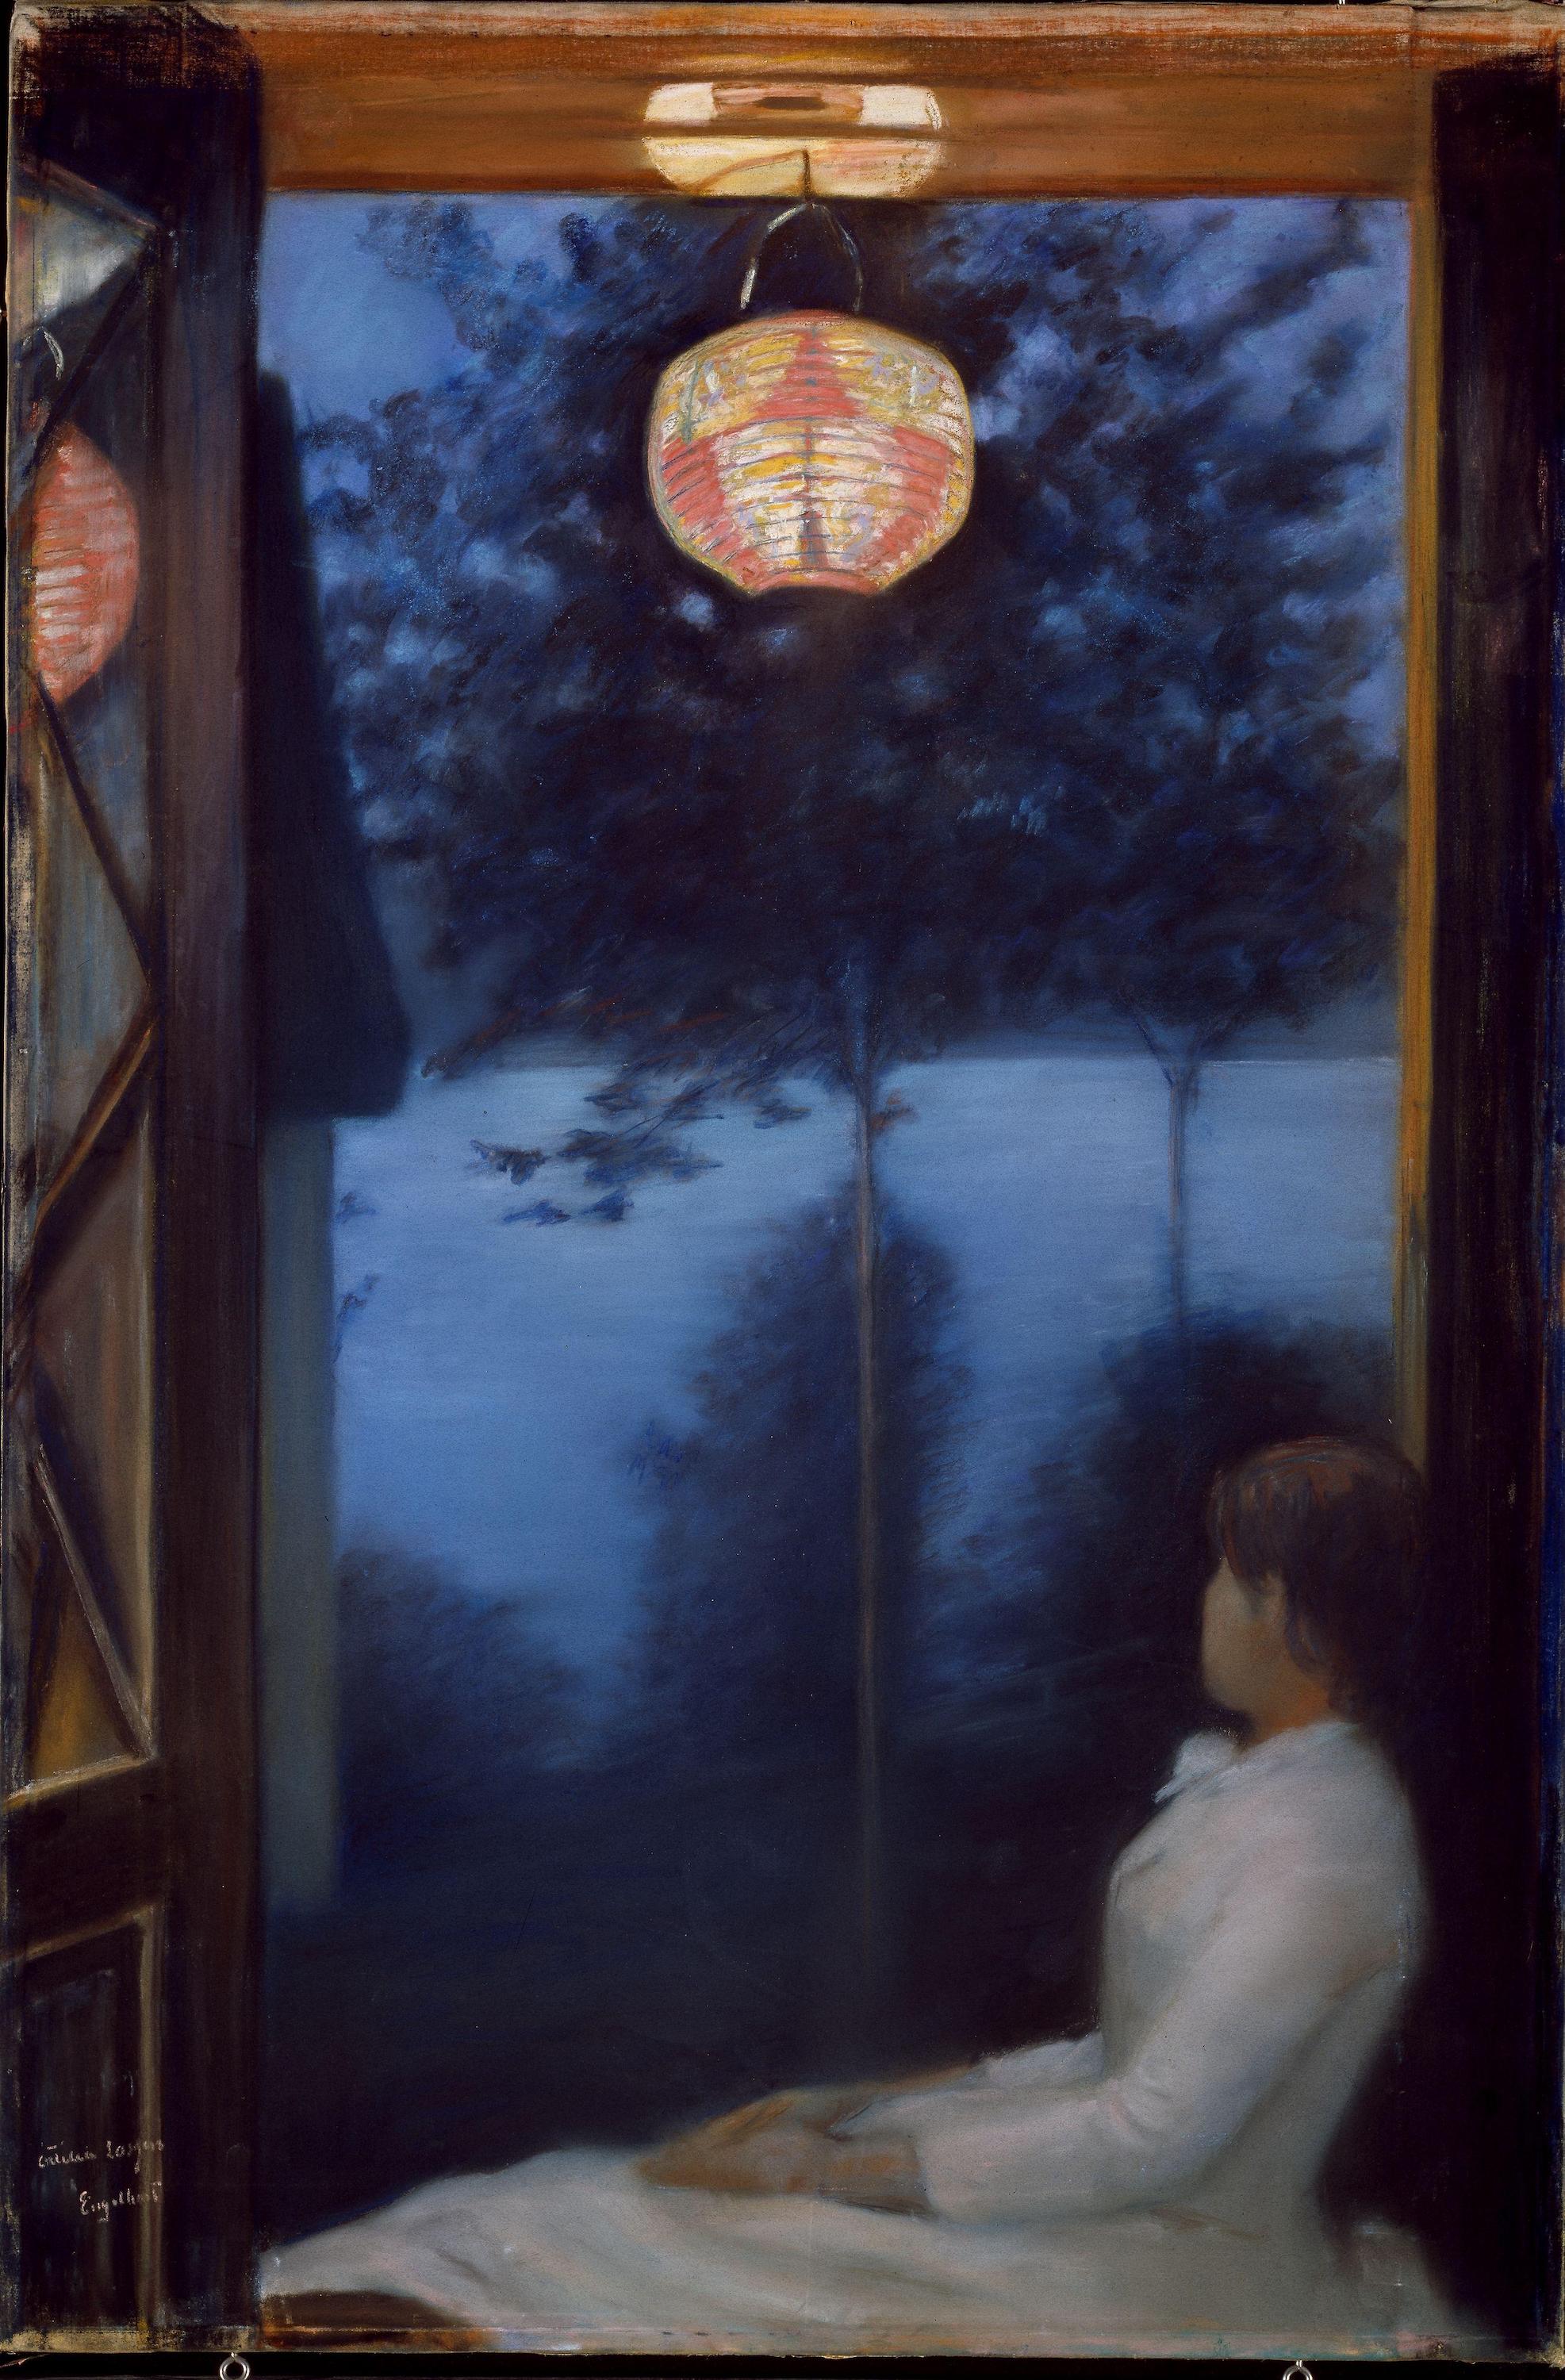 Una lanterna giapponese by Oda Krohg - 1886 - 100.7 x 67.5 cm 